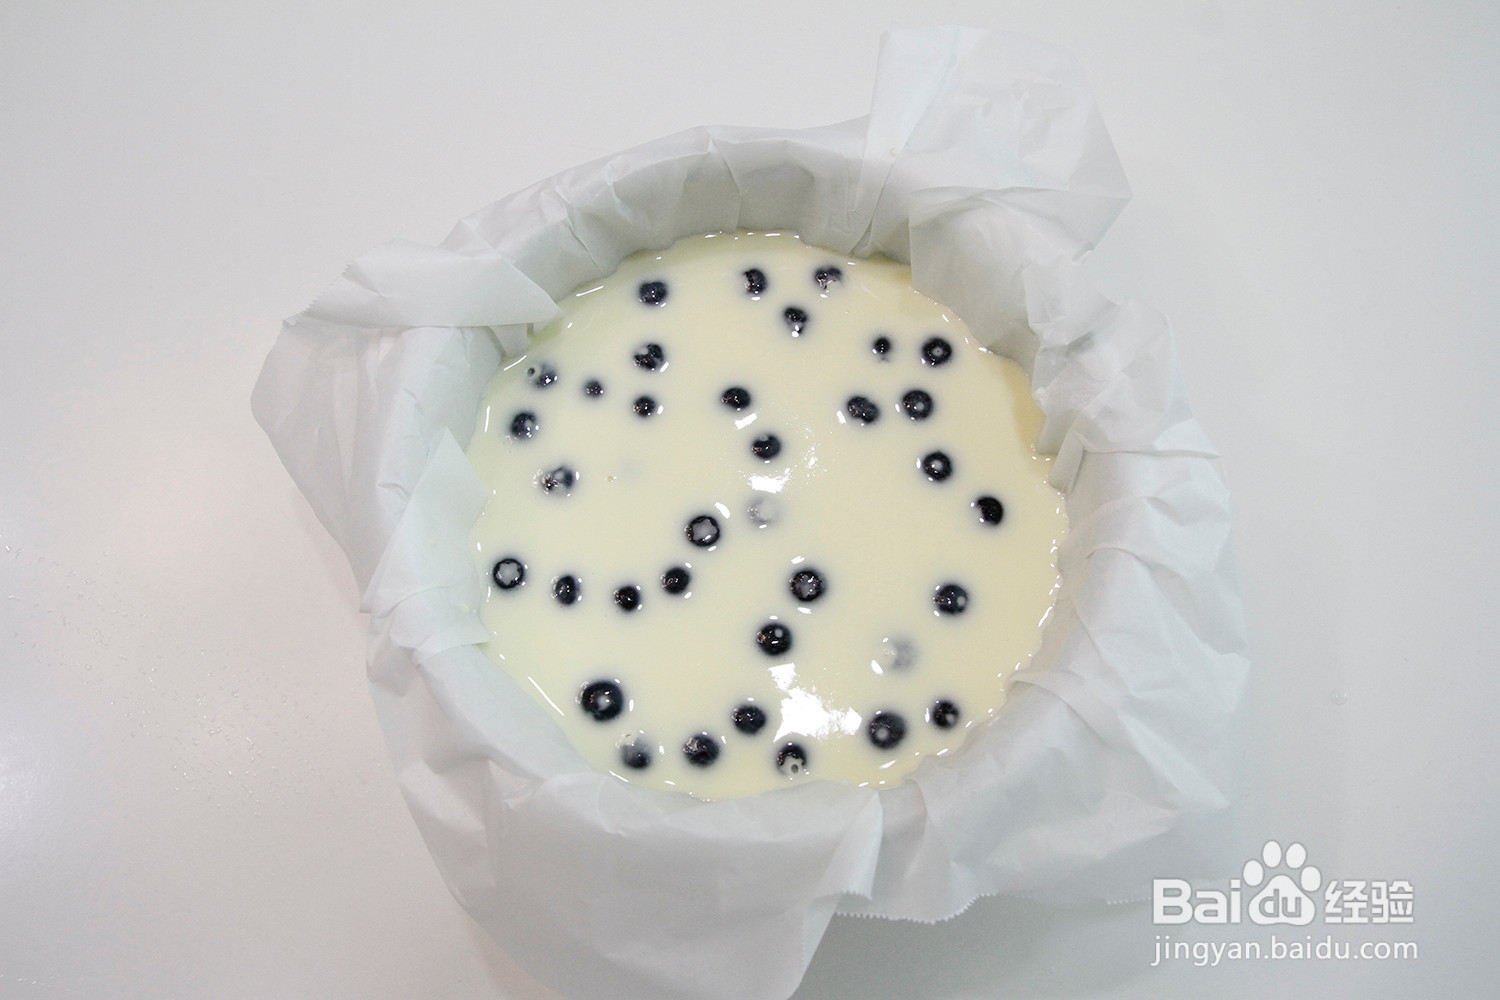 蓝莓酸奶蛋糕的做法